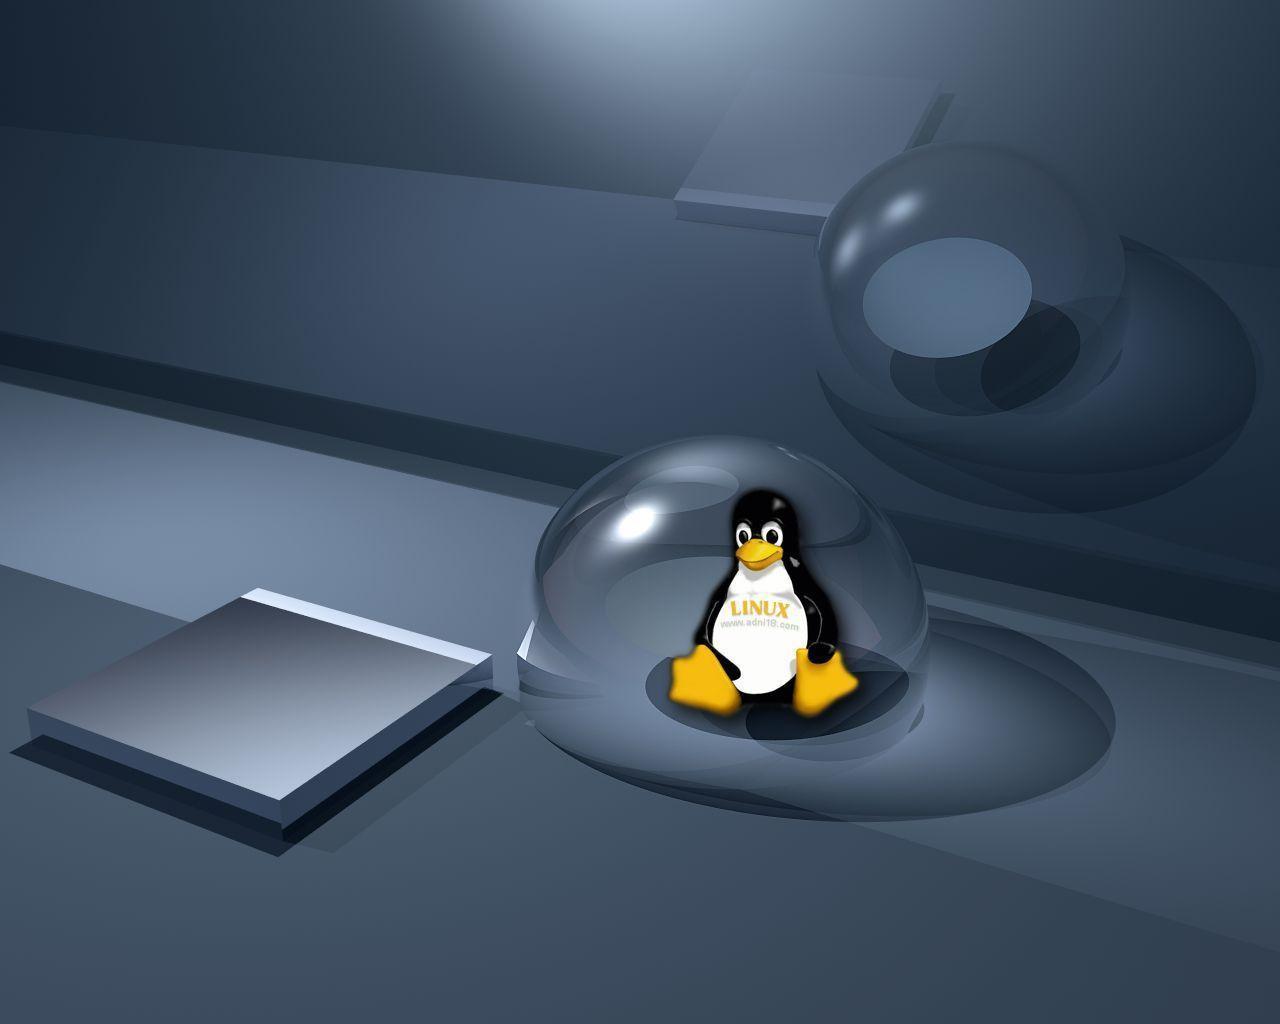 Wallpaper de Linux!!